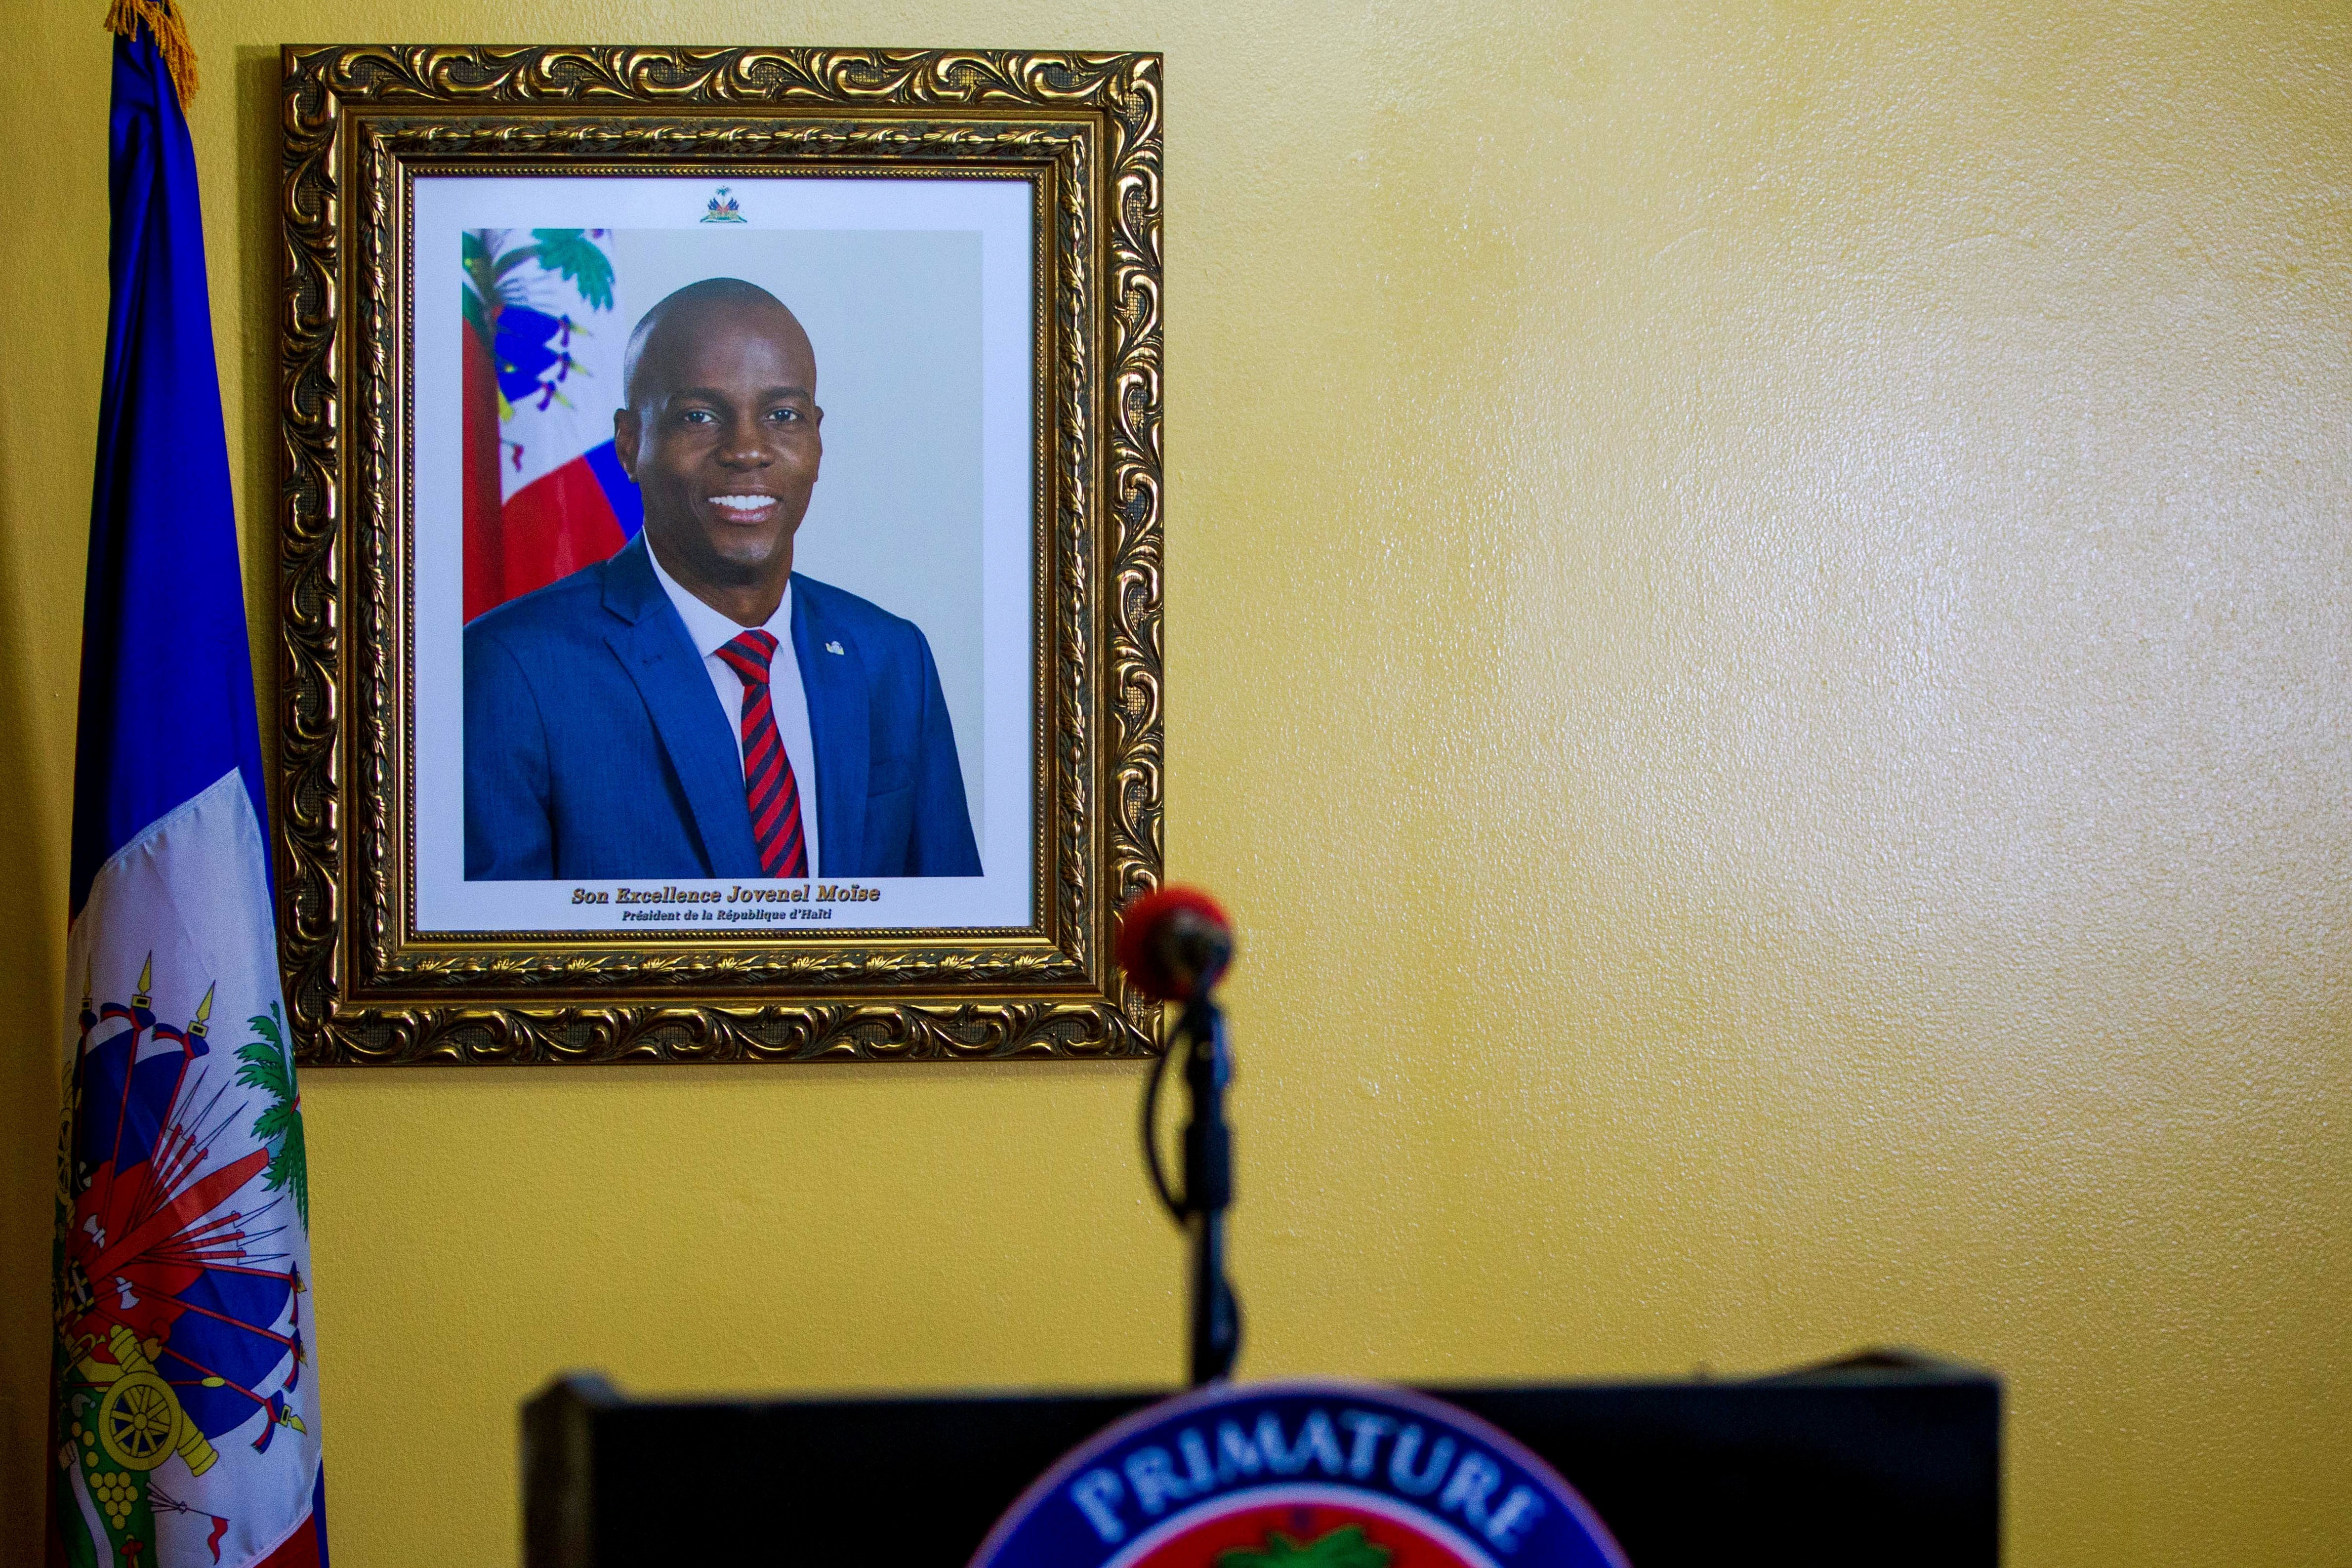 EEUU aclaró que no reconoce a ningún político como líder legítimo de Haití